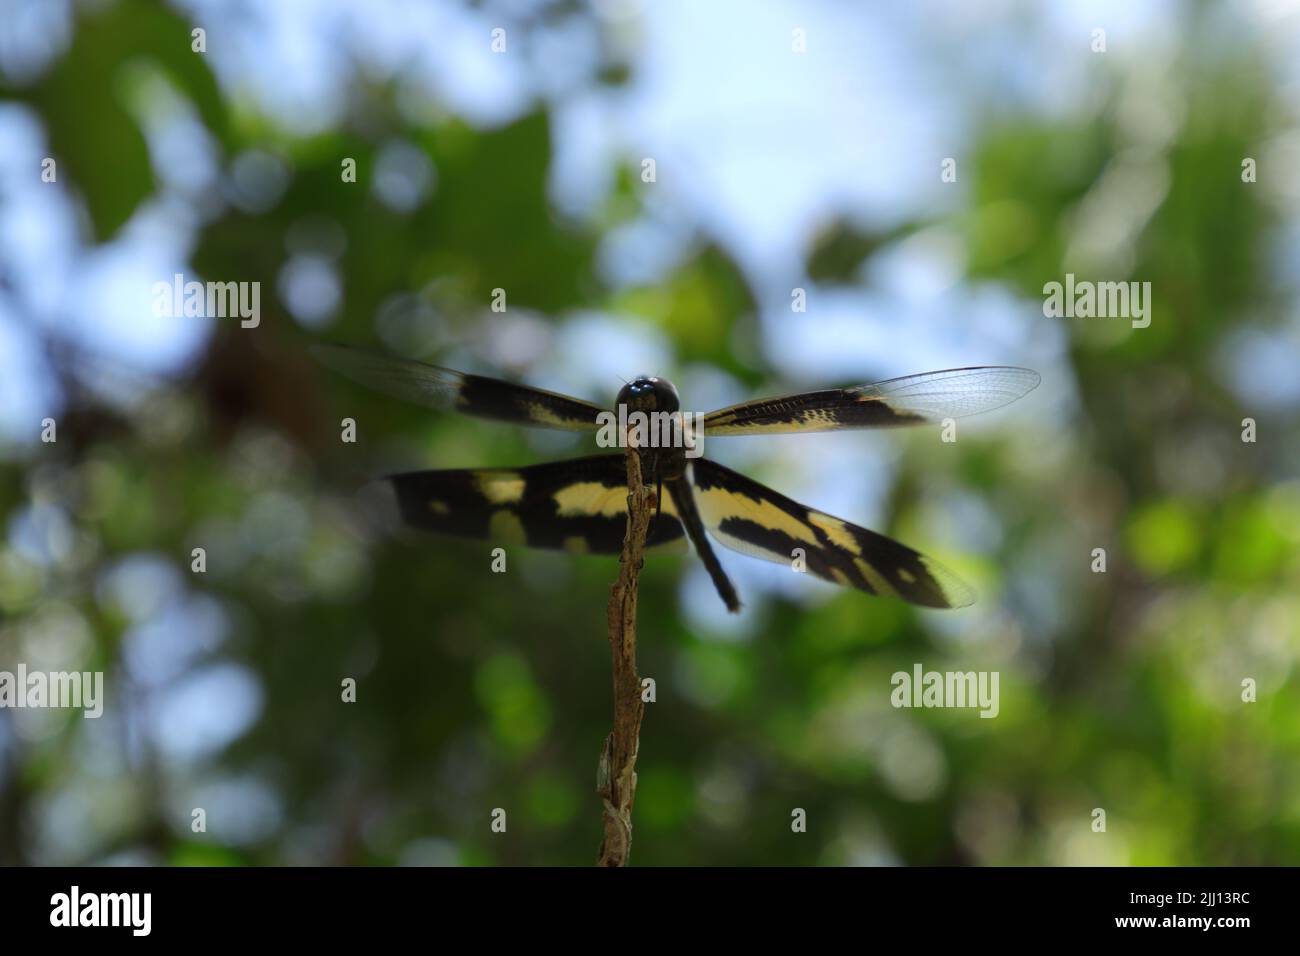 Vue de bas niveau d'une aile commune d'image (Rhyothemis Variegata) libellule perchée sur la pointe d'une tige morte.les ailes de libellule penchent vers la gauche si Banque D'Images